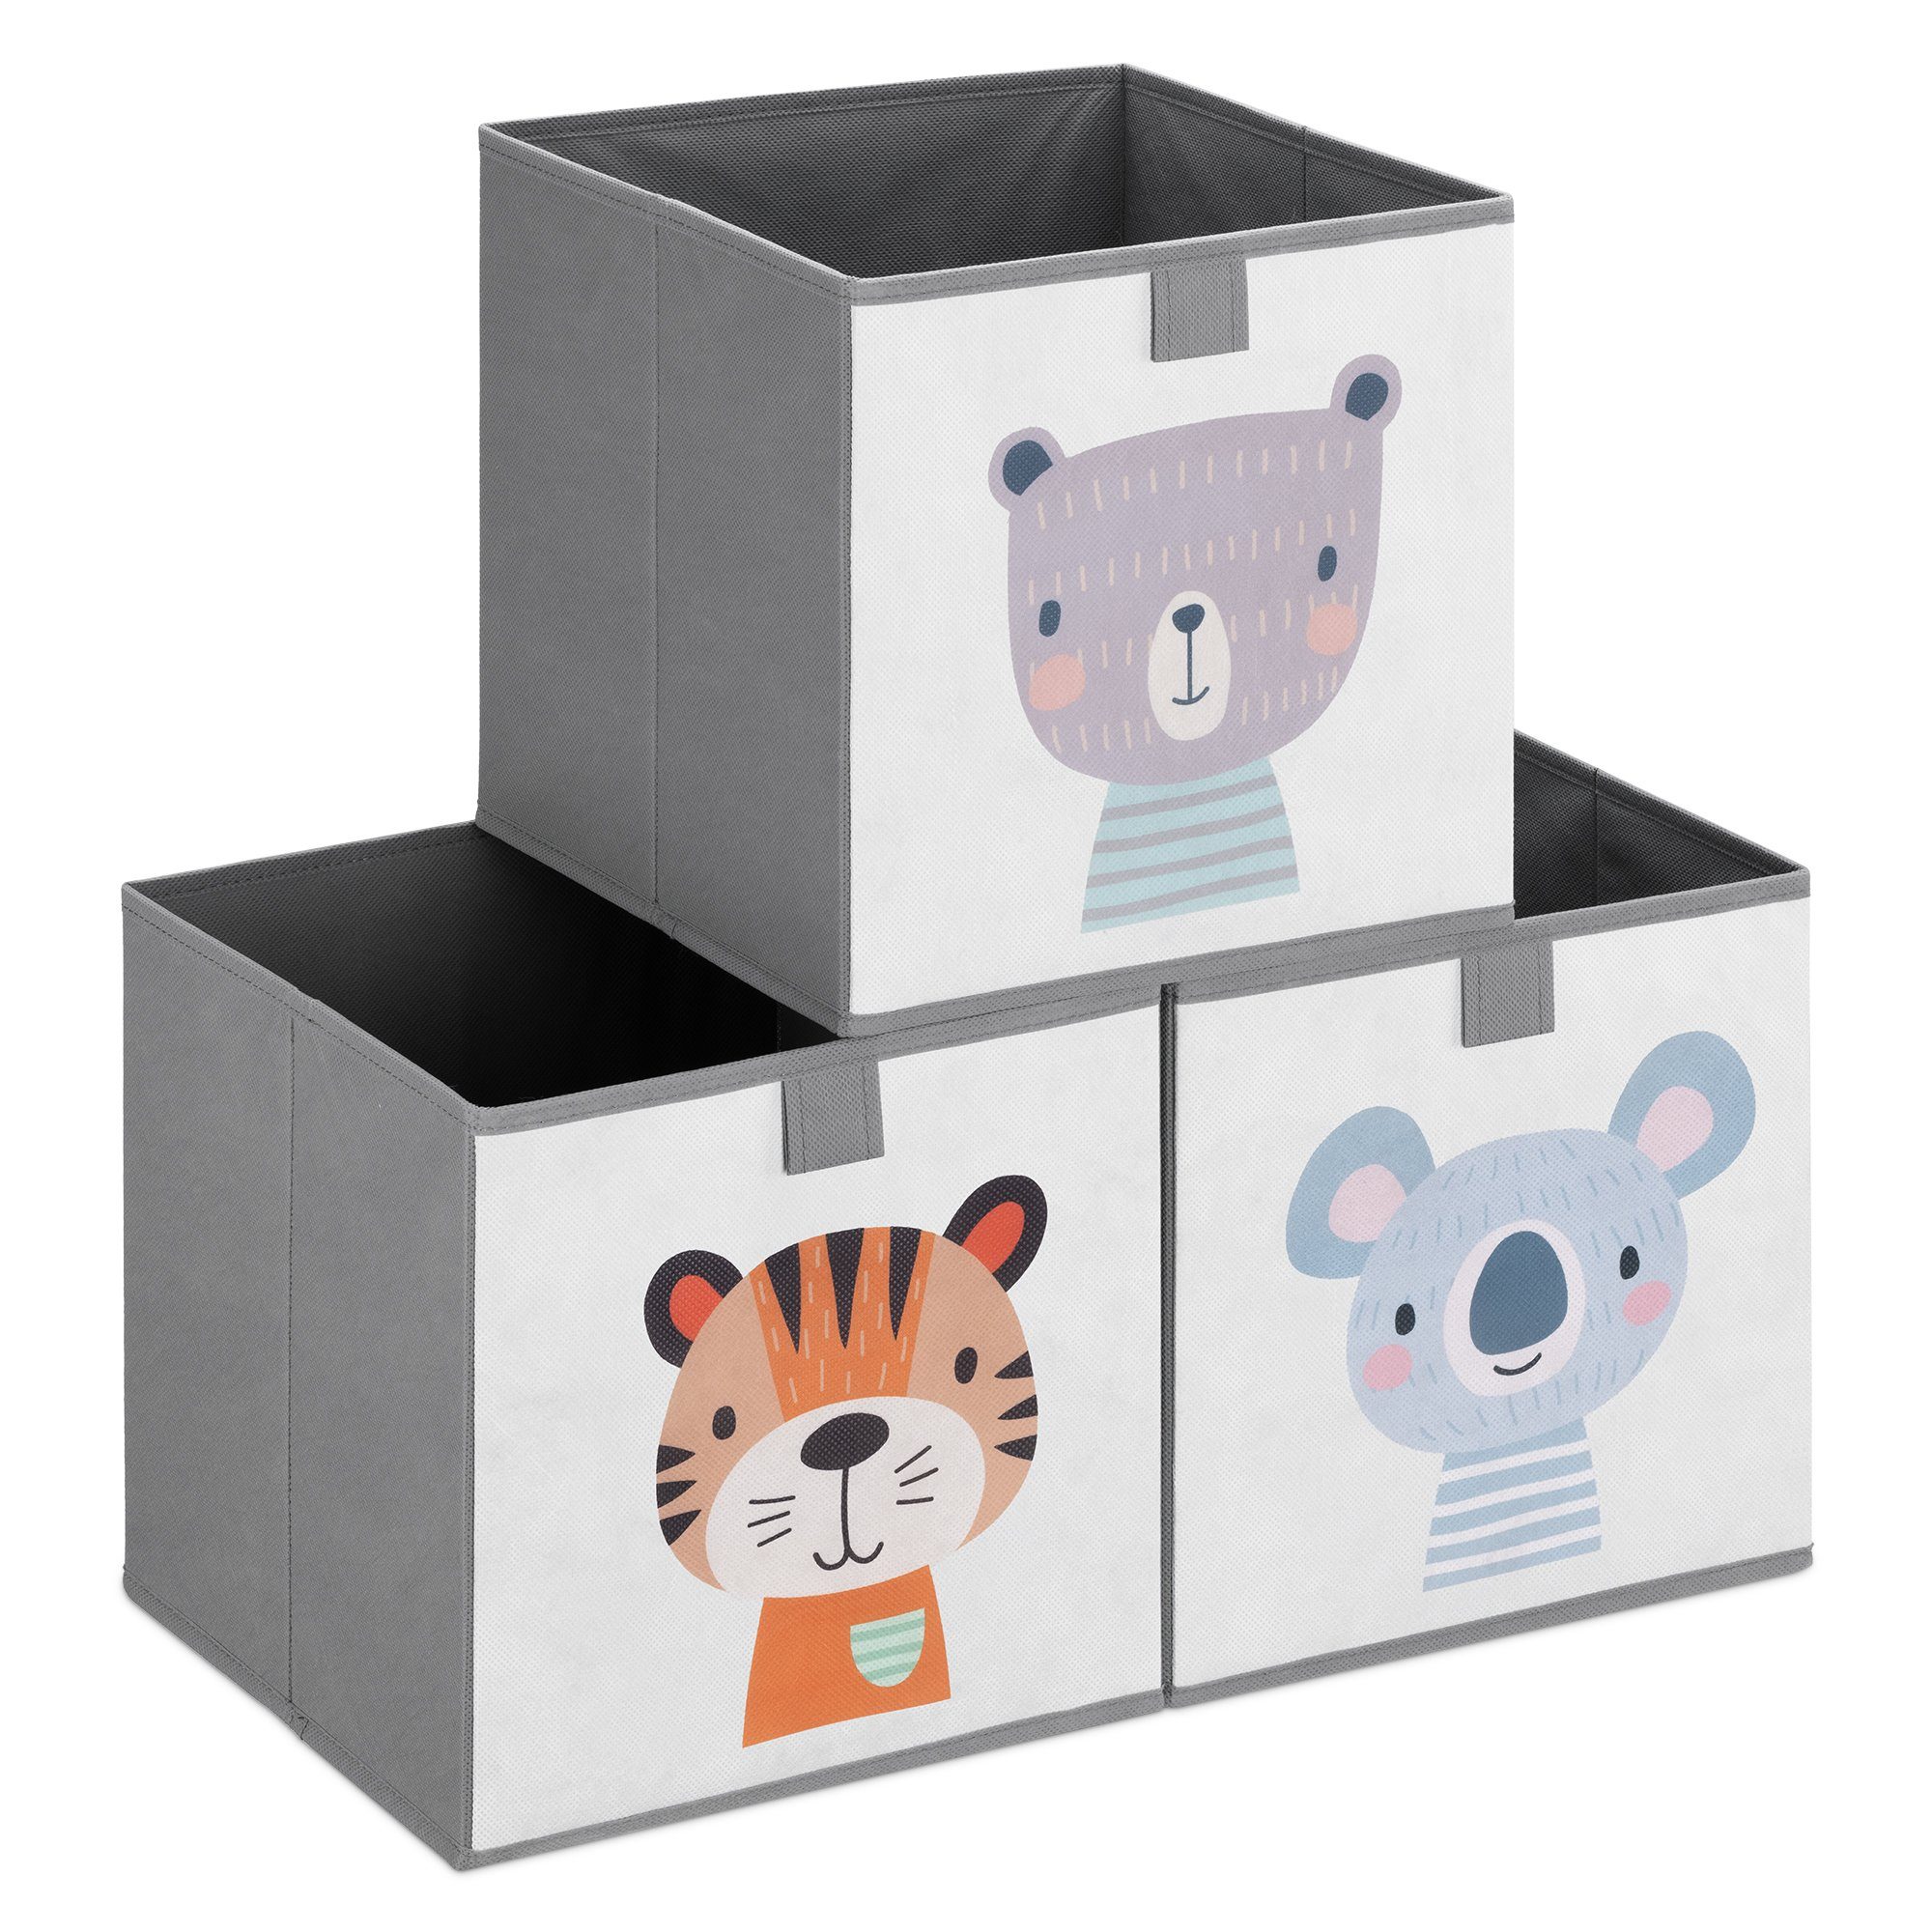 Navaris Aufbewahrungsbox, Kinder Aufbewahrungsbox 3er Set - Regal  Aufbewahrung 28 x 28 x 28 cm Spielzeugkiste - 3x Spielzeug Box faltbar -  Tier Motiv Kisten mit Griff